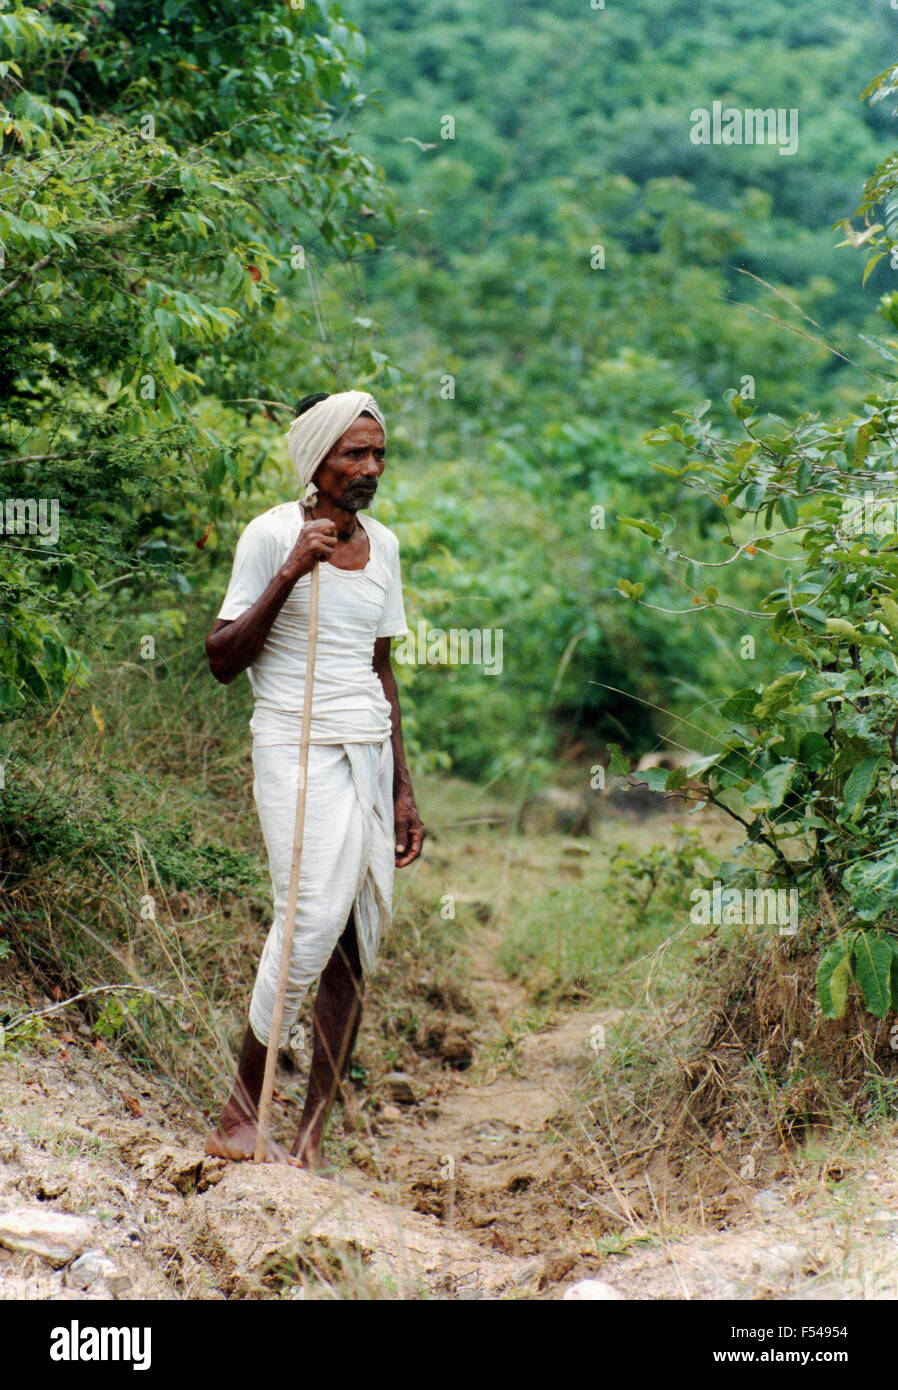 Uomo orgoglioso su un percorso di foresta pluviale area di conservazione in collaborazione con Oxfam dove stanno piantando alberi nello stato di Orissa sulla costa orientale dell'India - 1992 Foto Stock